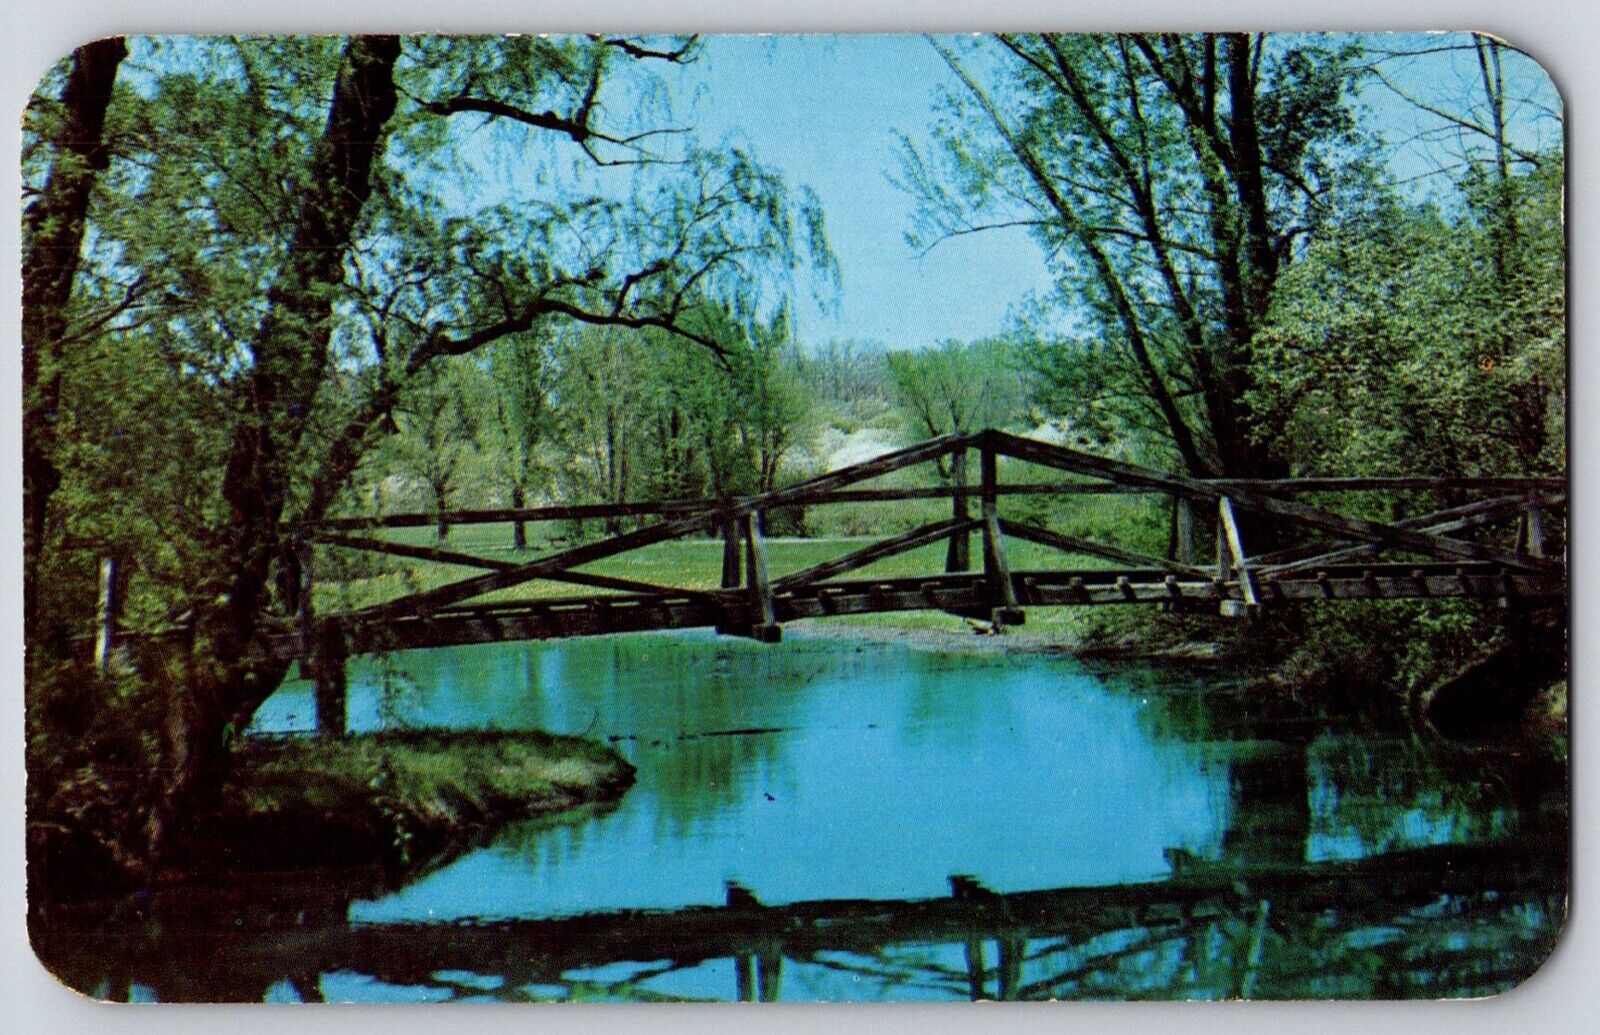 Postcard Lisle Illinois Morton Abboretum Foot Bridge Over Inlet